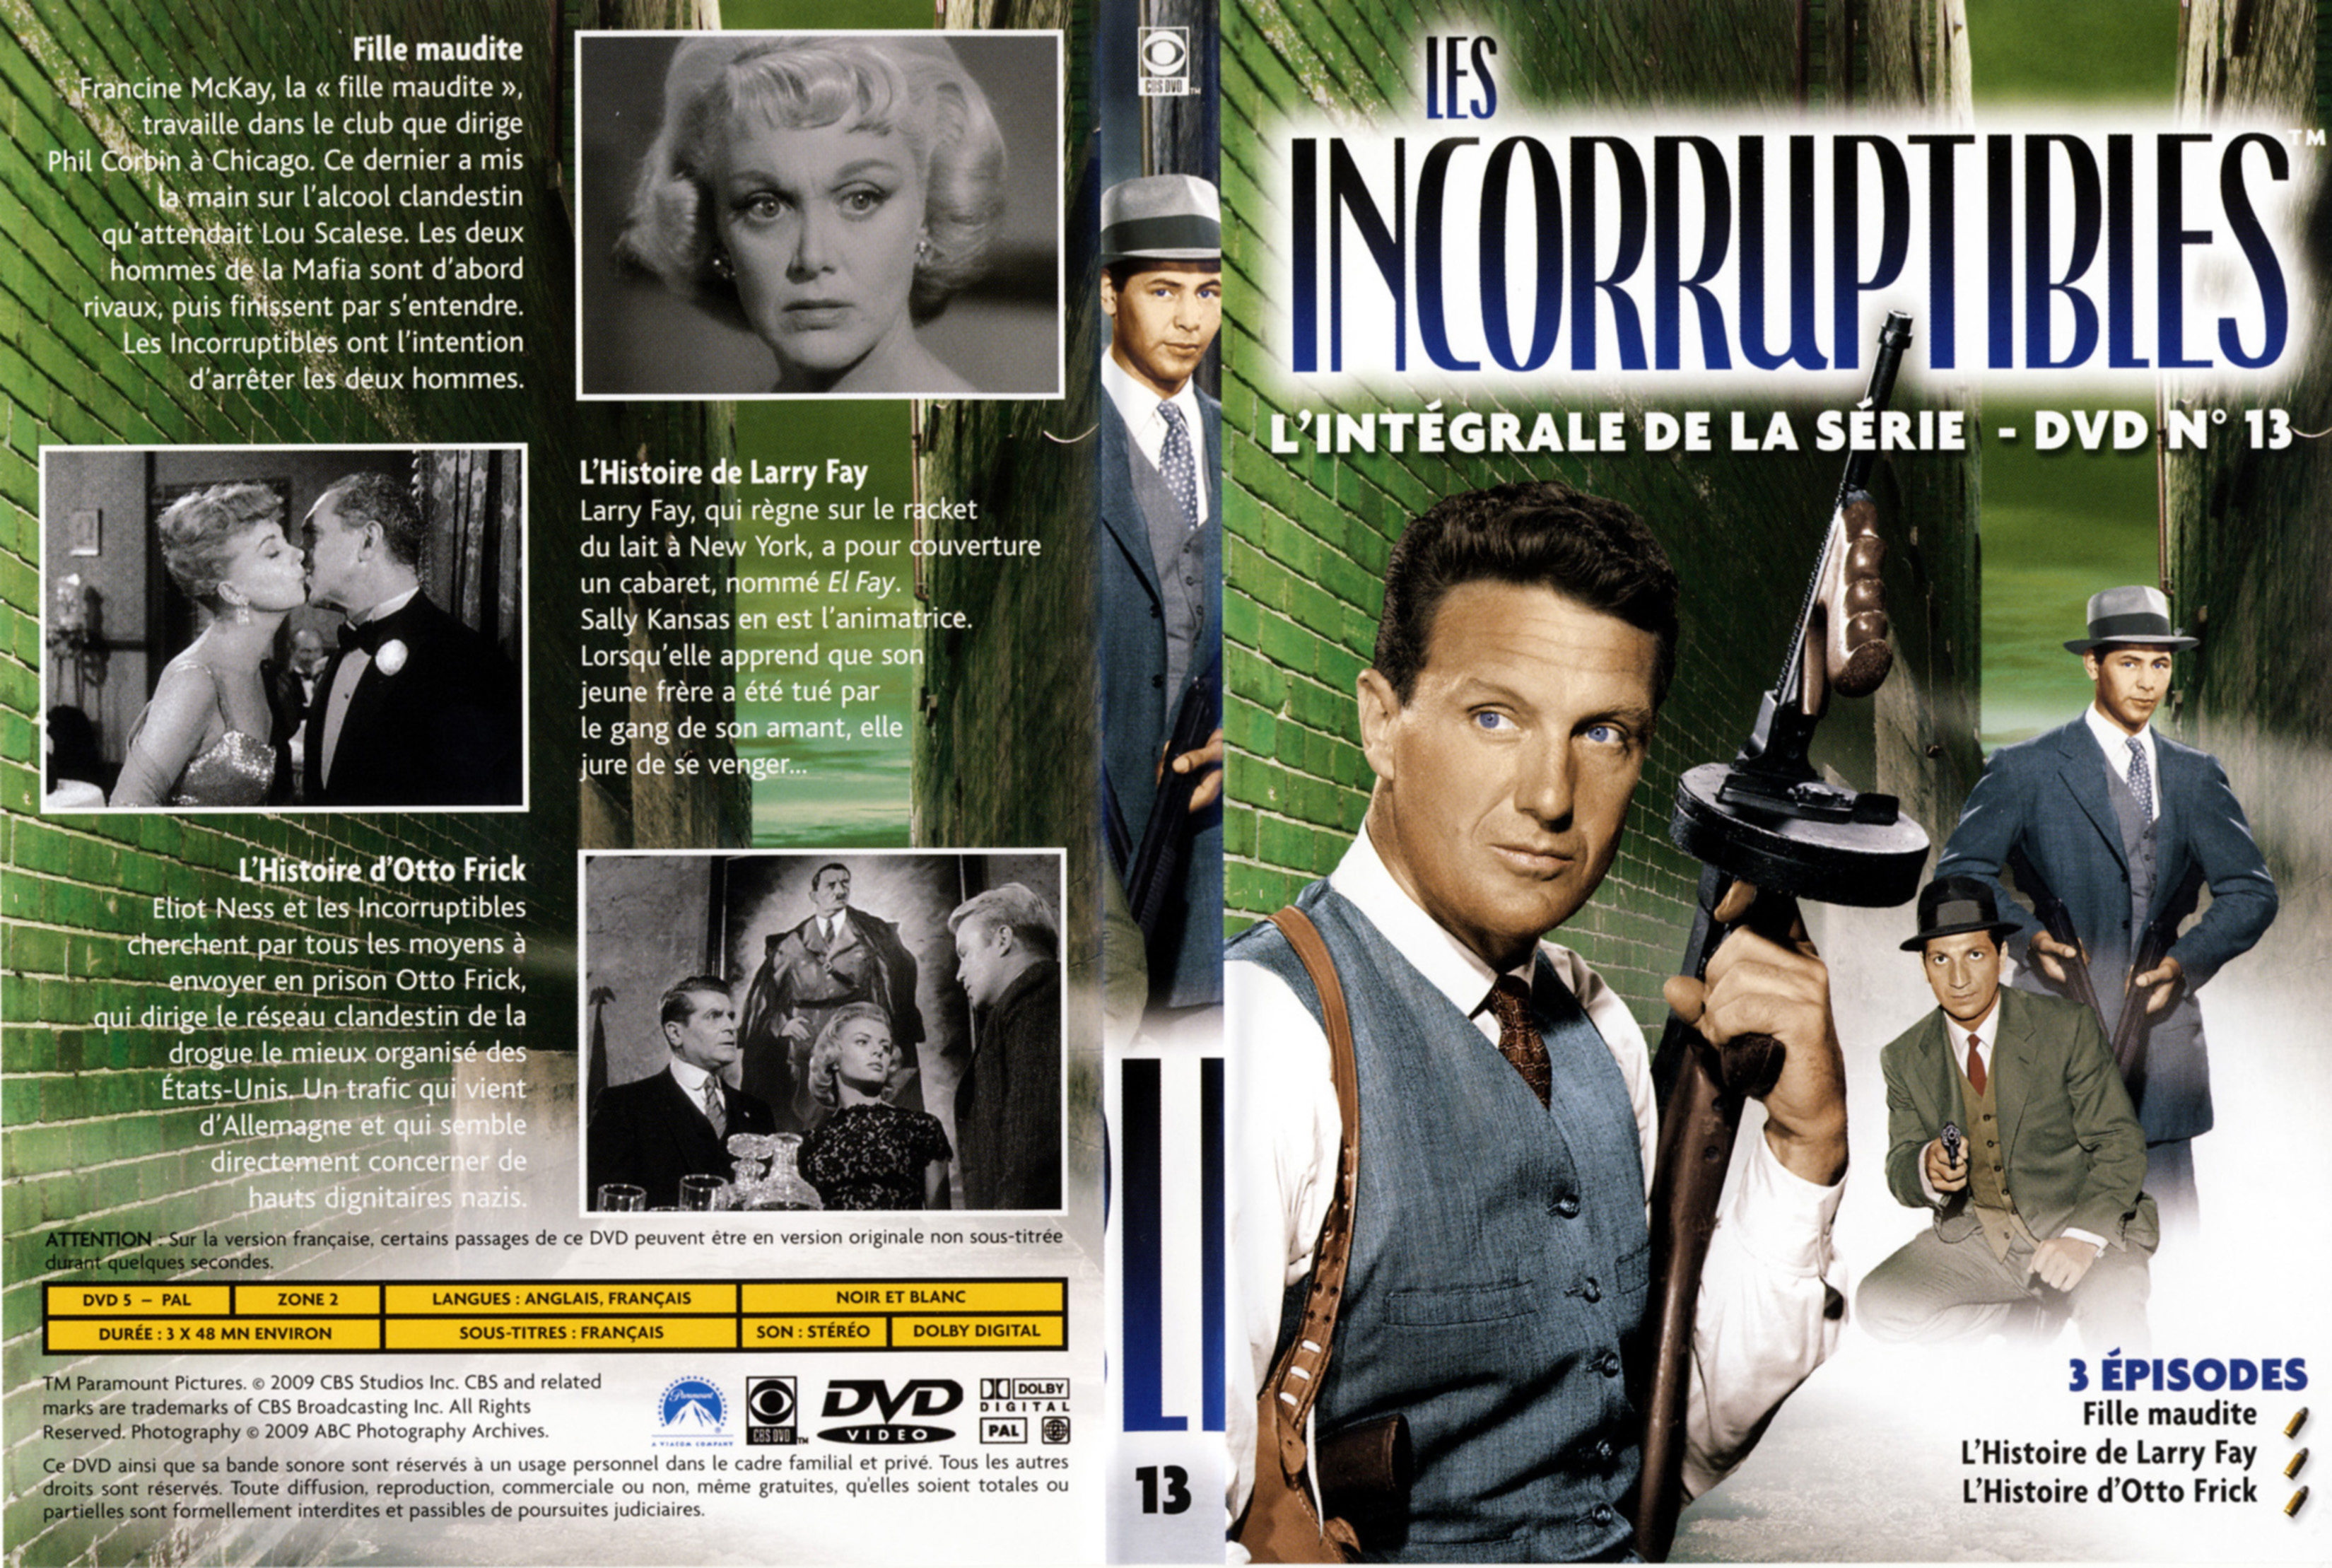 Jaquette DVD Les incorruptibles intgrale DVD 13